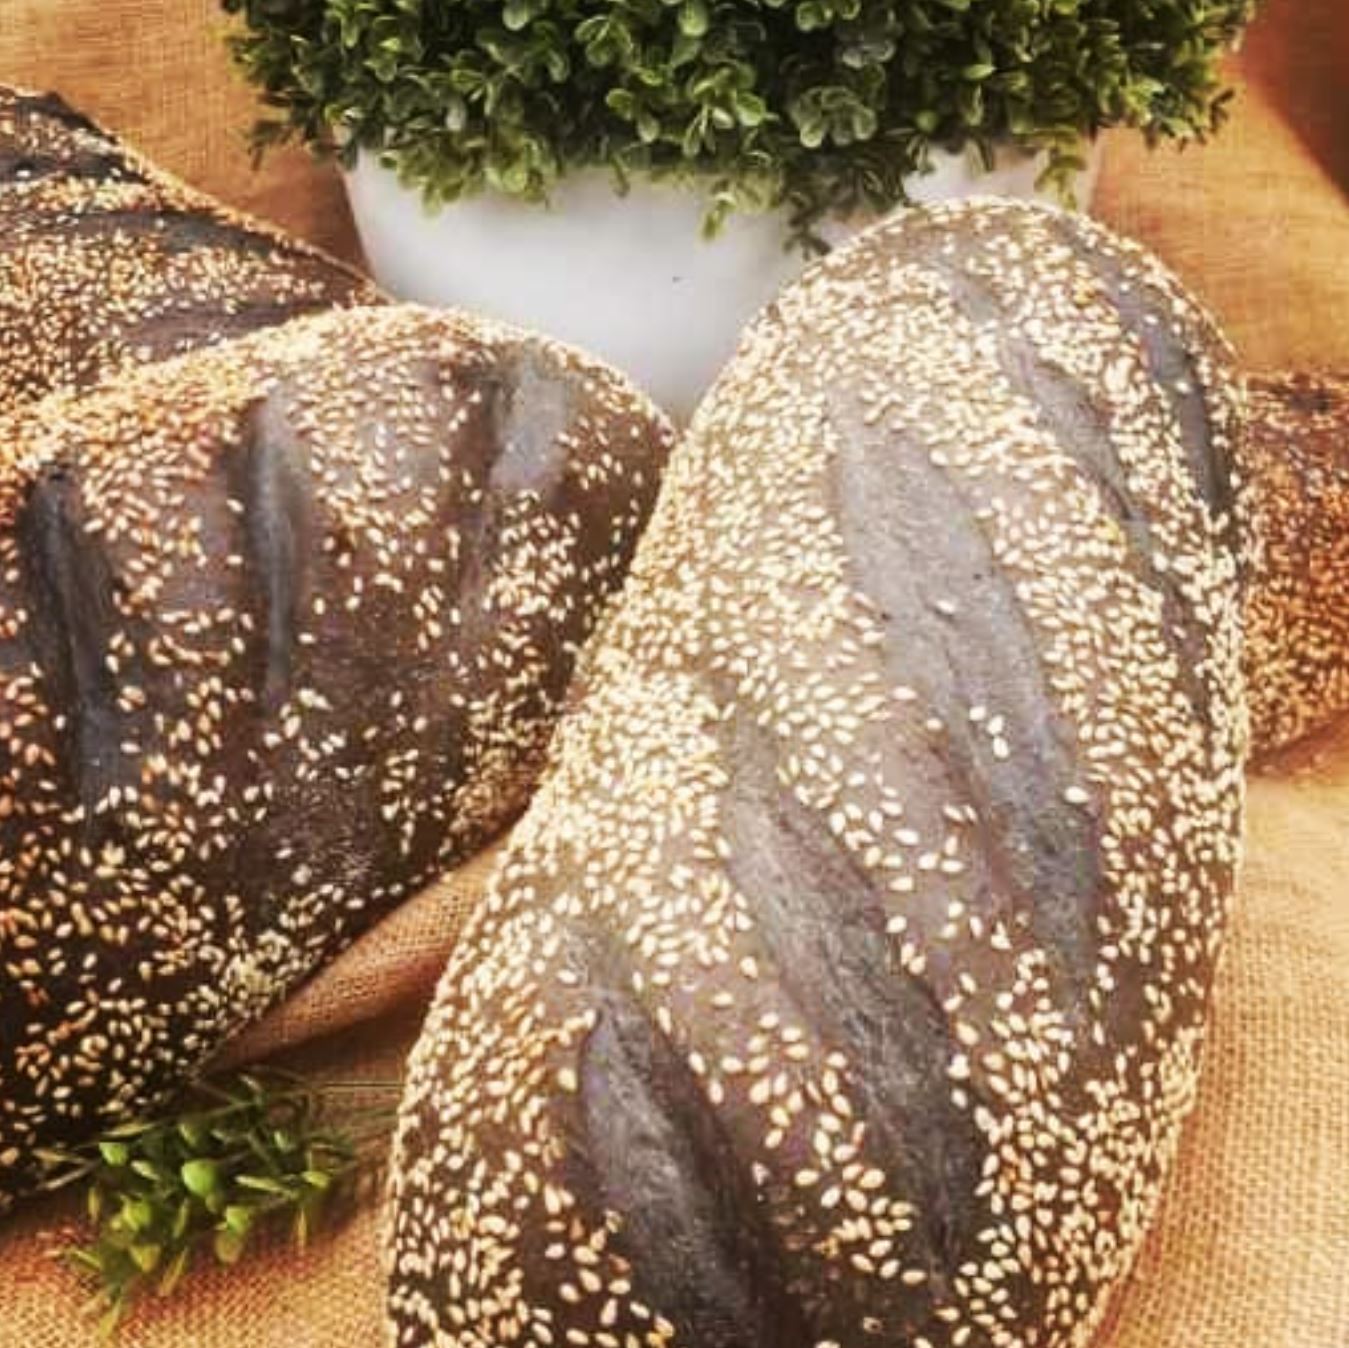 Harper-Street-bakery-Charcoal-Bread.jpg